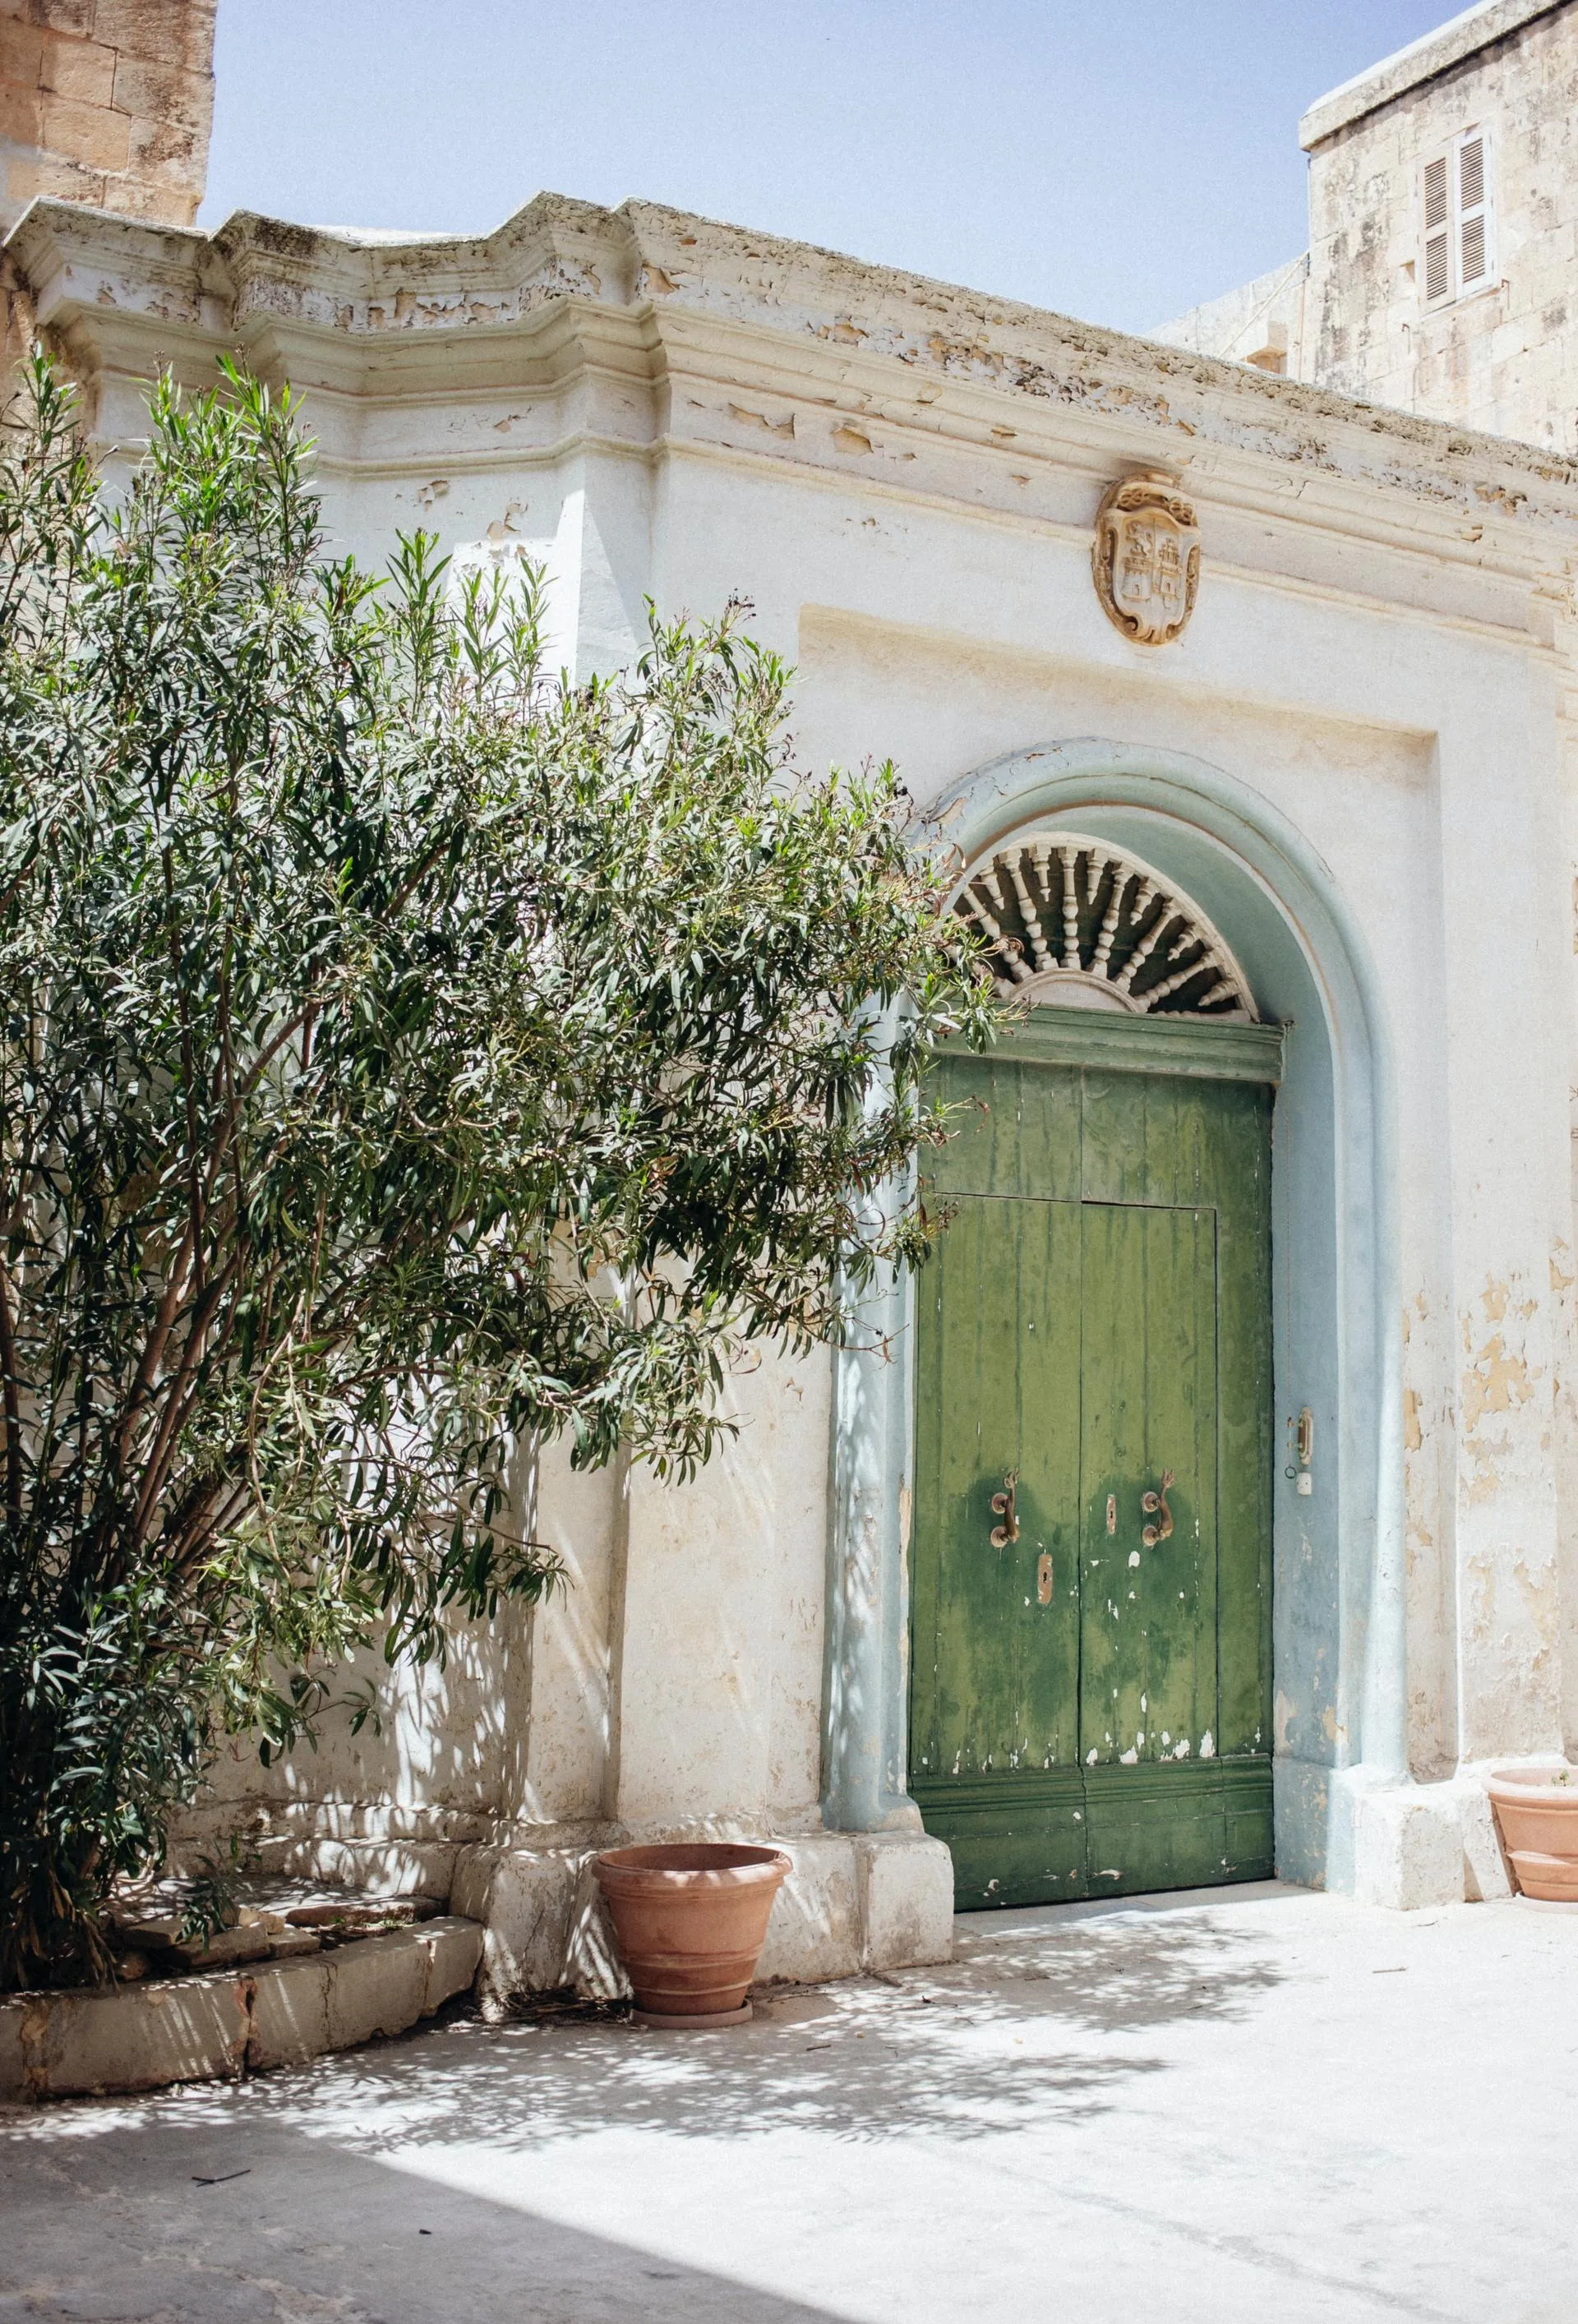 Oude groene deur op Malta met olijfboom 